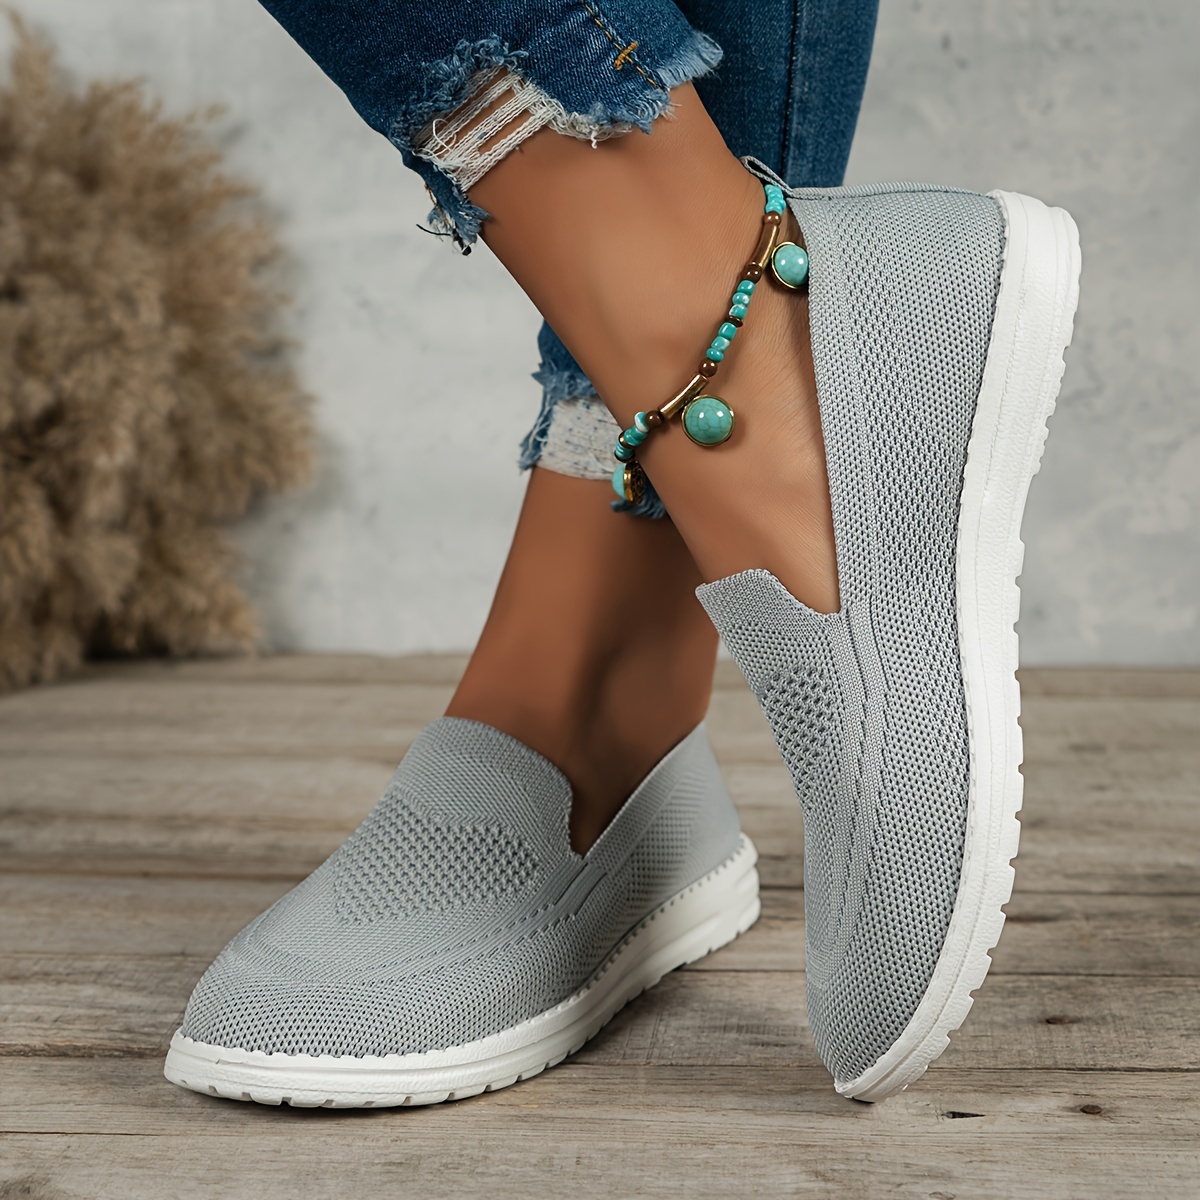 GHPKS Women's Walking Shoes Elastic Knit Lightweight Slip on